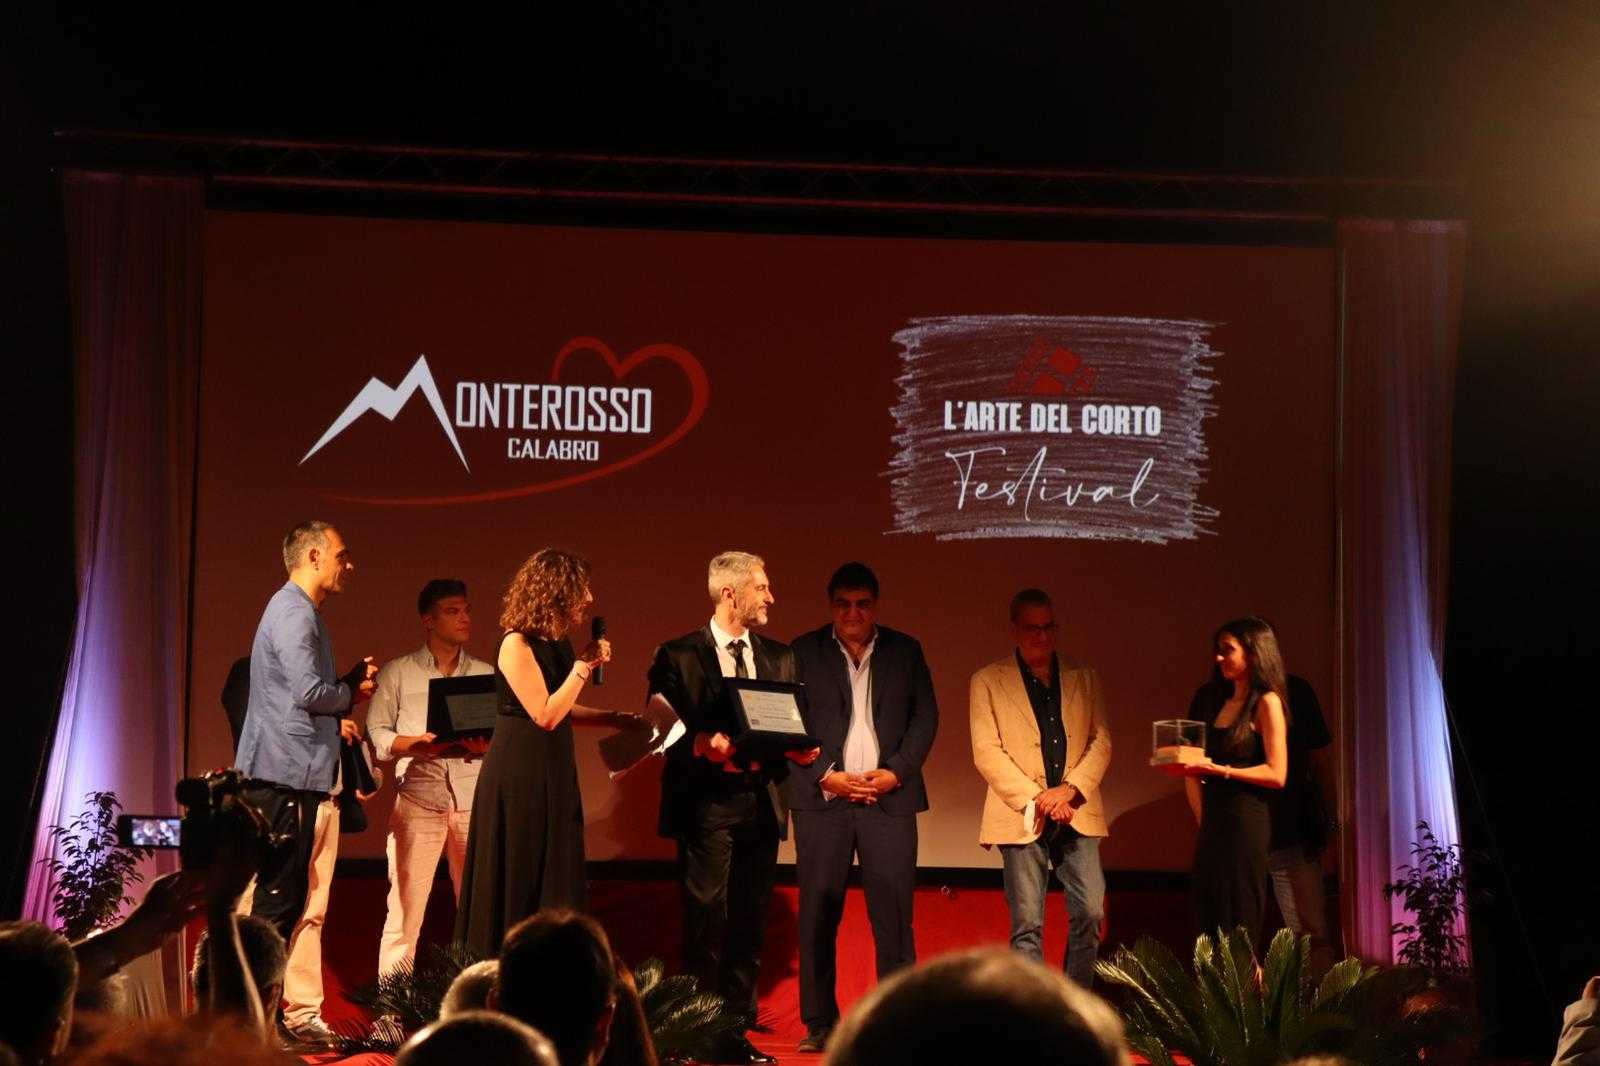 Monterosso Calabro. “L’Arte del Corto” Grandissimo successo per la serata finale